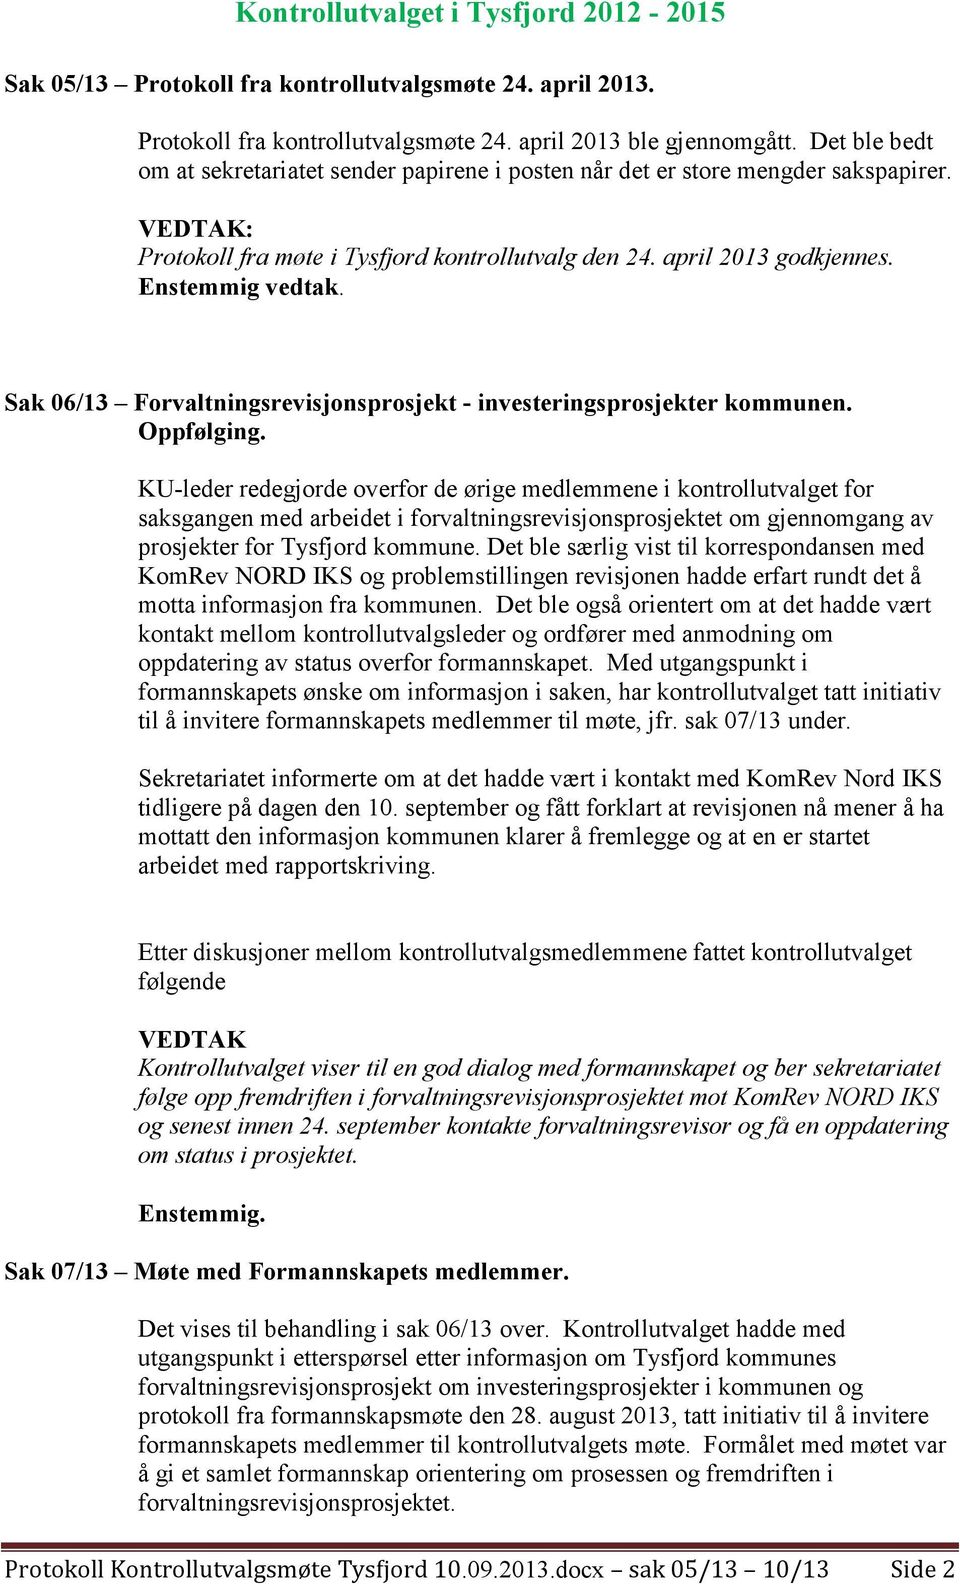 Sak 06/13 Forvaltningsrevisjonsprosjekt - investeringsprosjekter kommunen. Oppfølging.